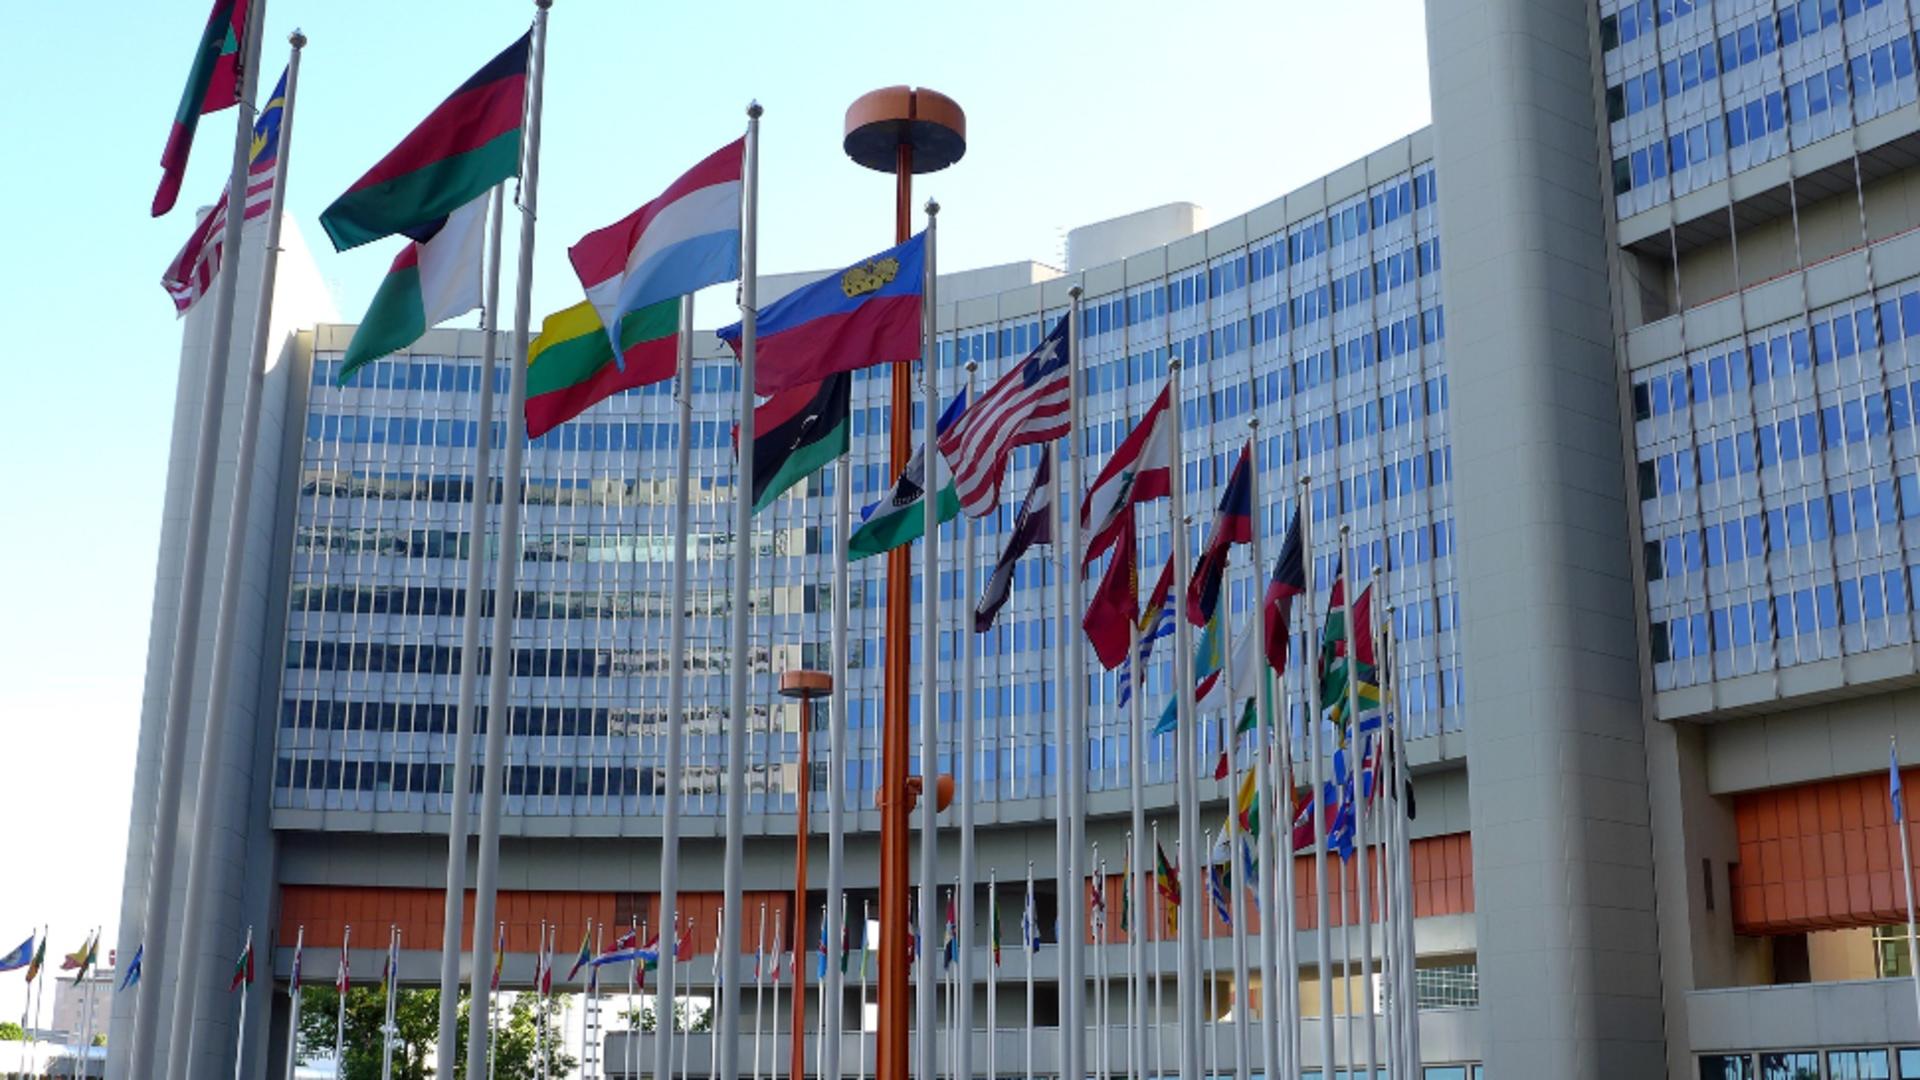 Adunarea Generală a ONU